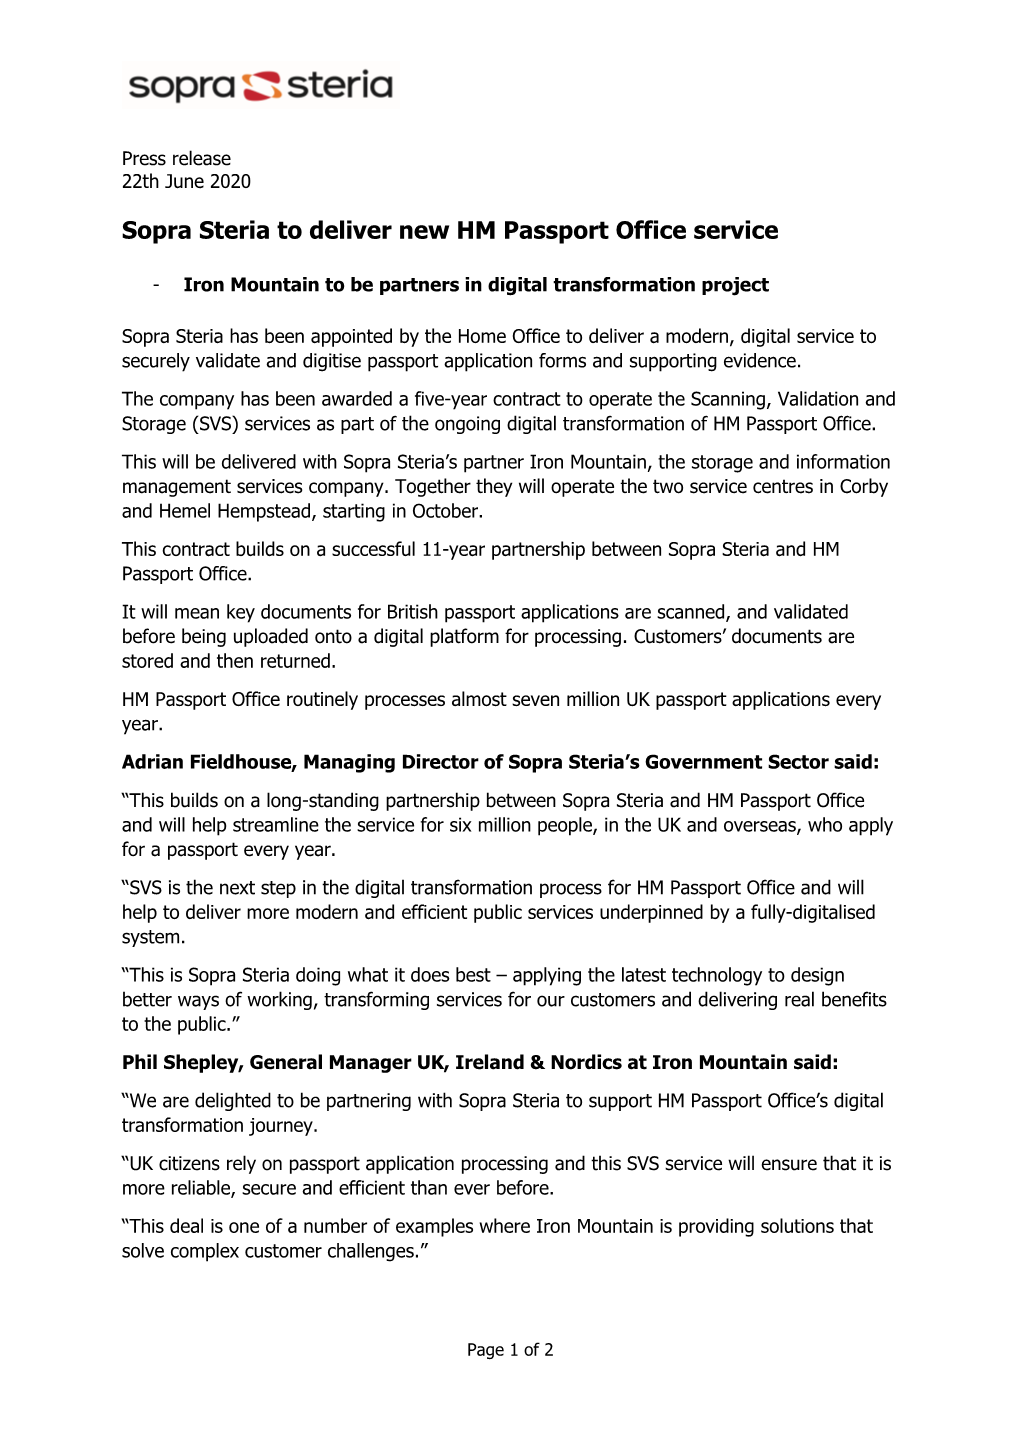 Sopra Steria to Deliver New HM Passport Office Service